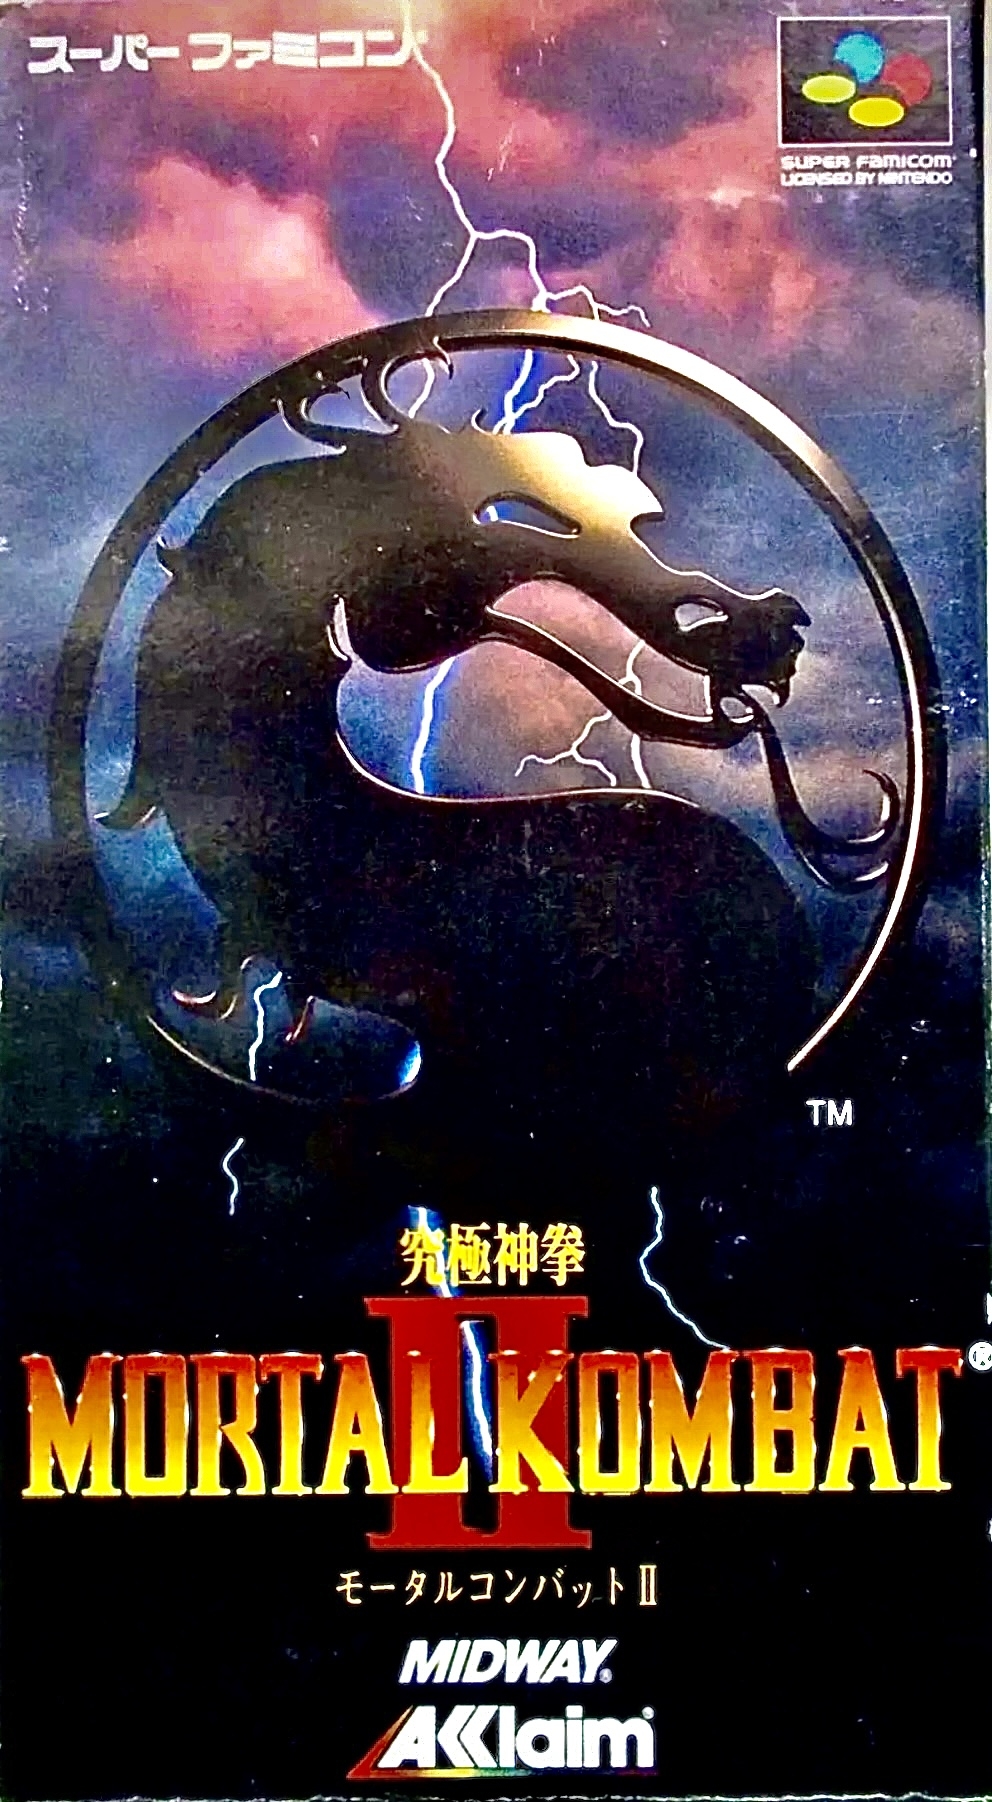 Mortal Kombat II Print Ad Game Poster Art PROMO Original SNES Sega Genesis  Gear